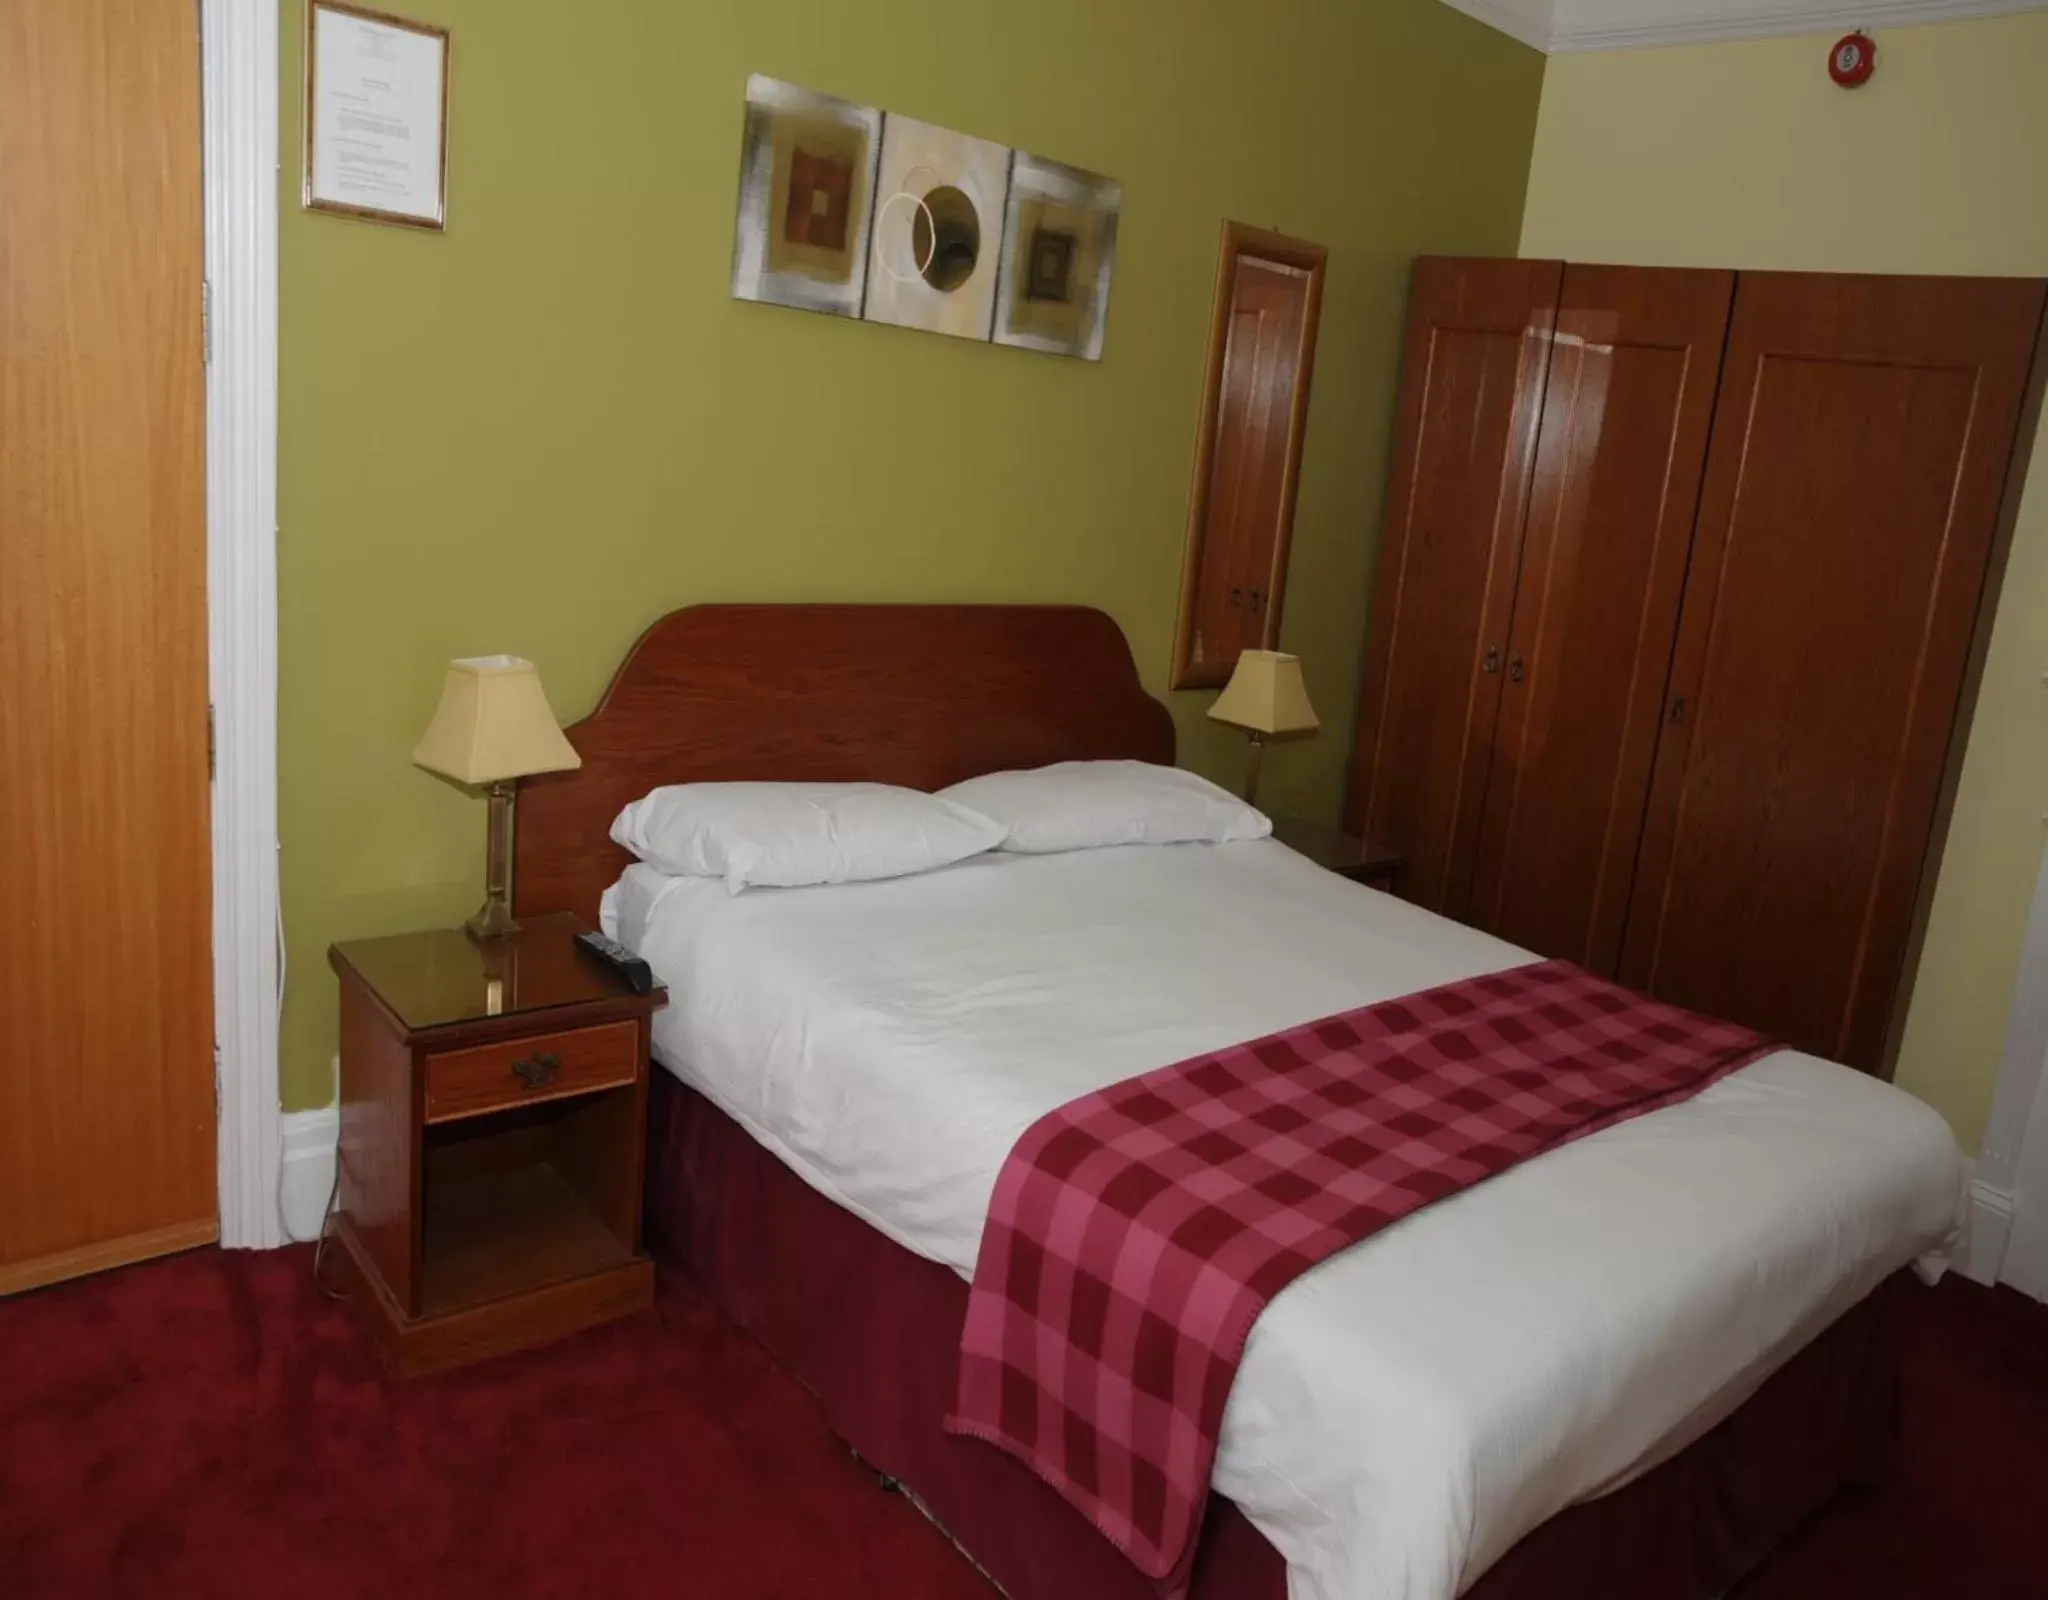 Bedroom, Room Photo in Wimblehurst Hotel